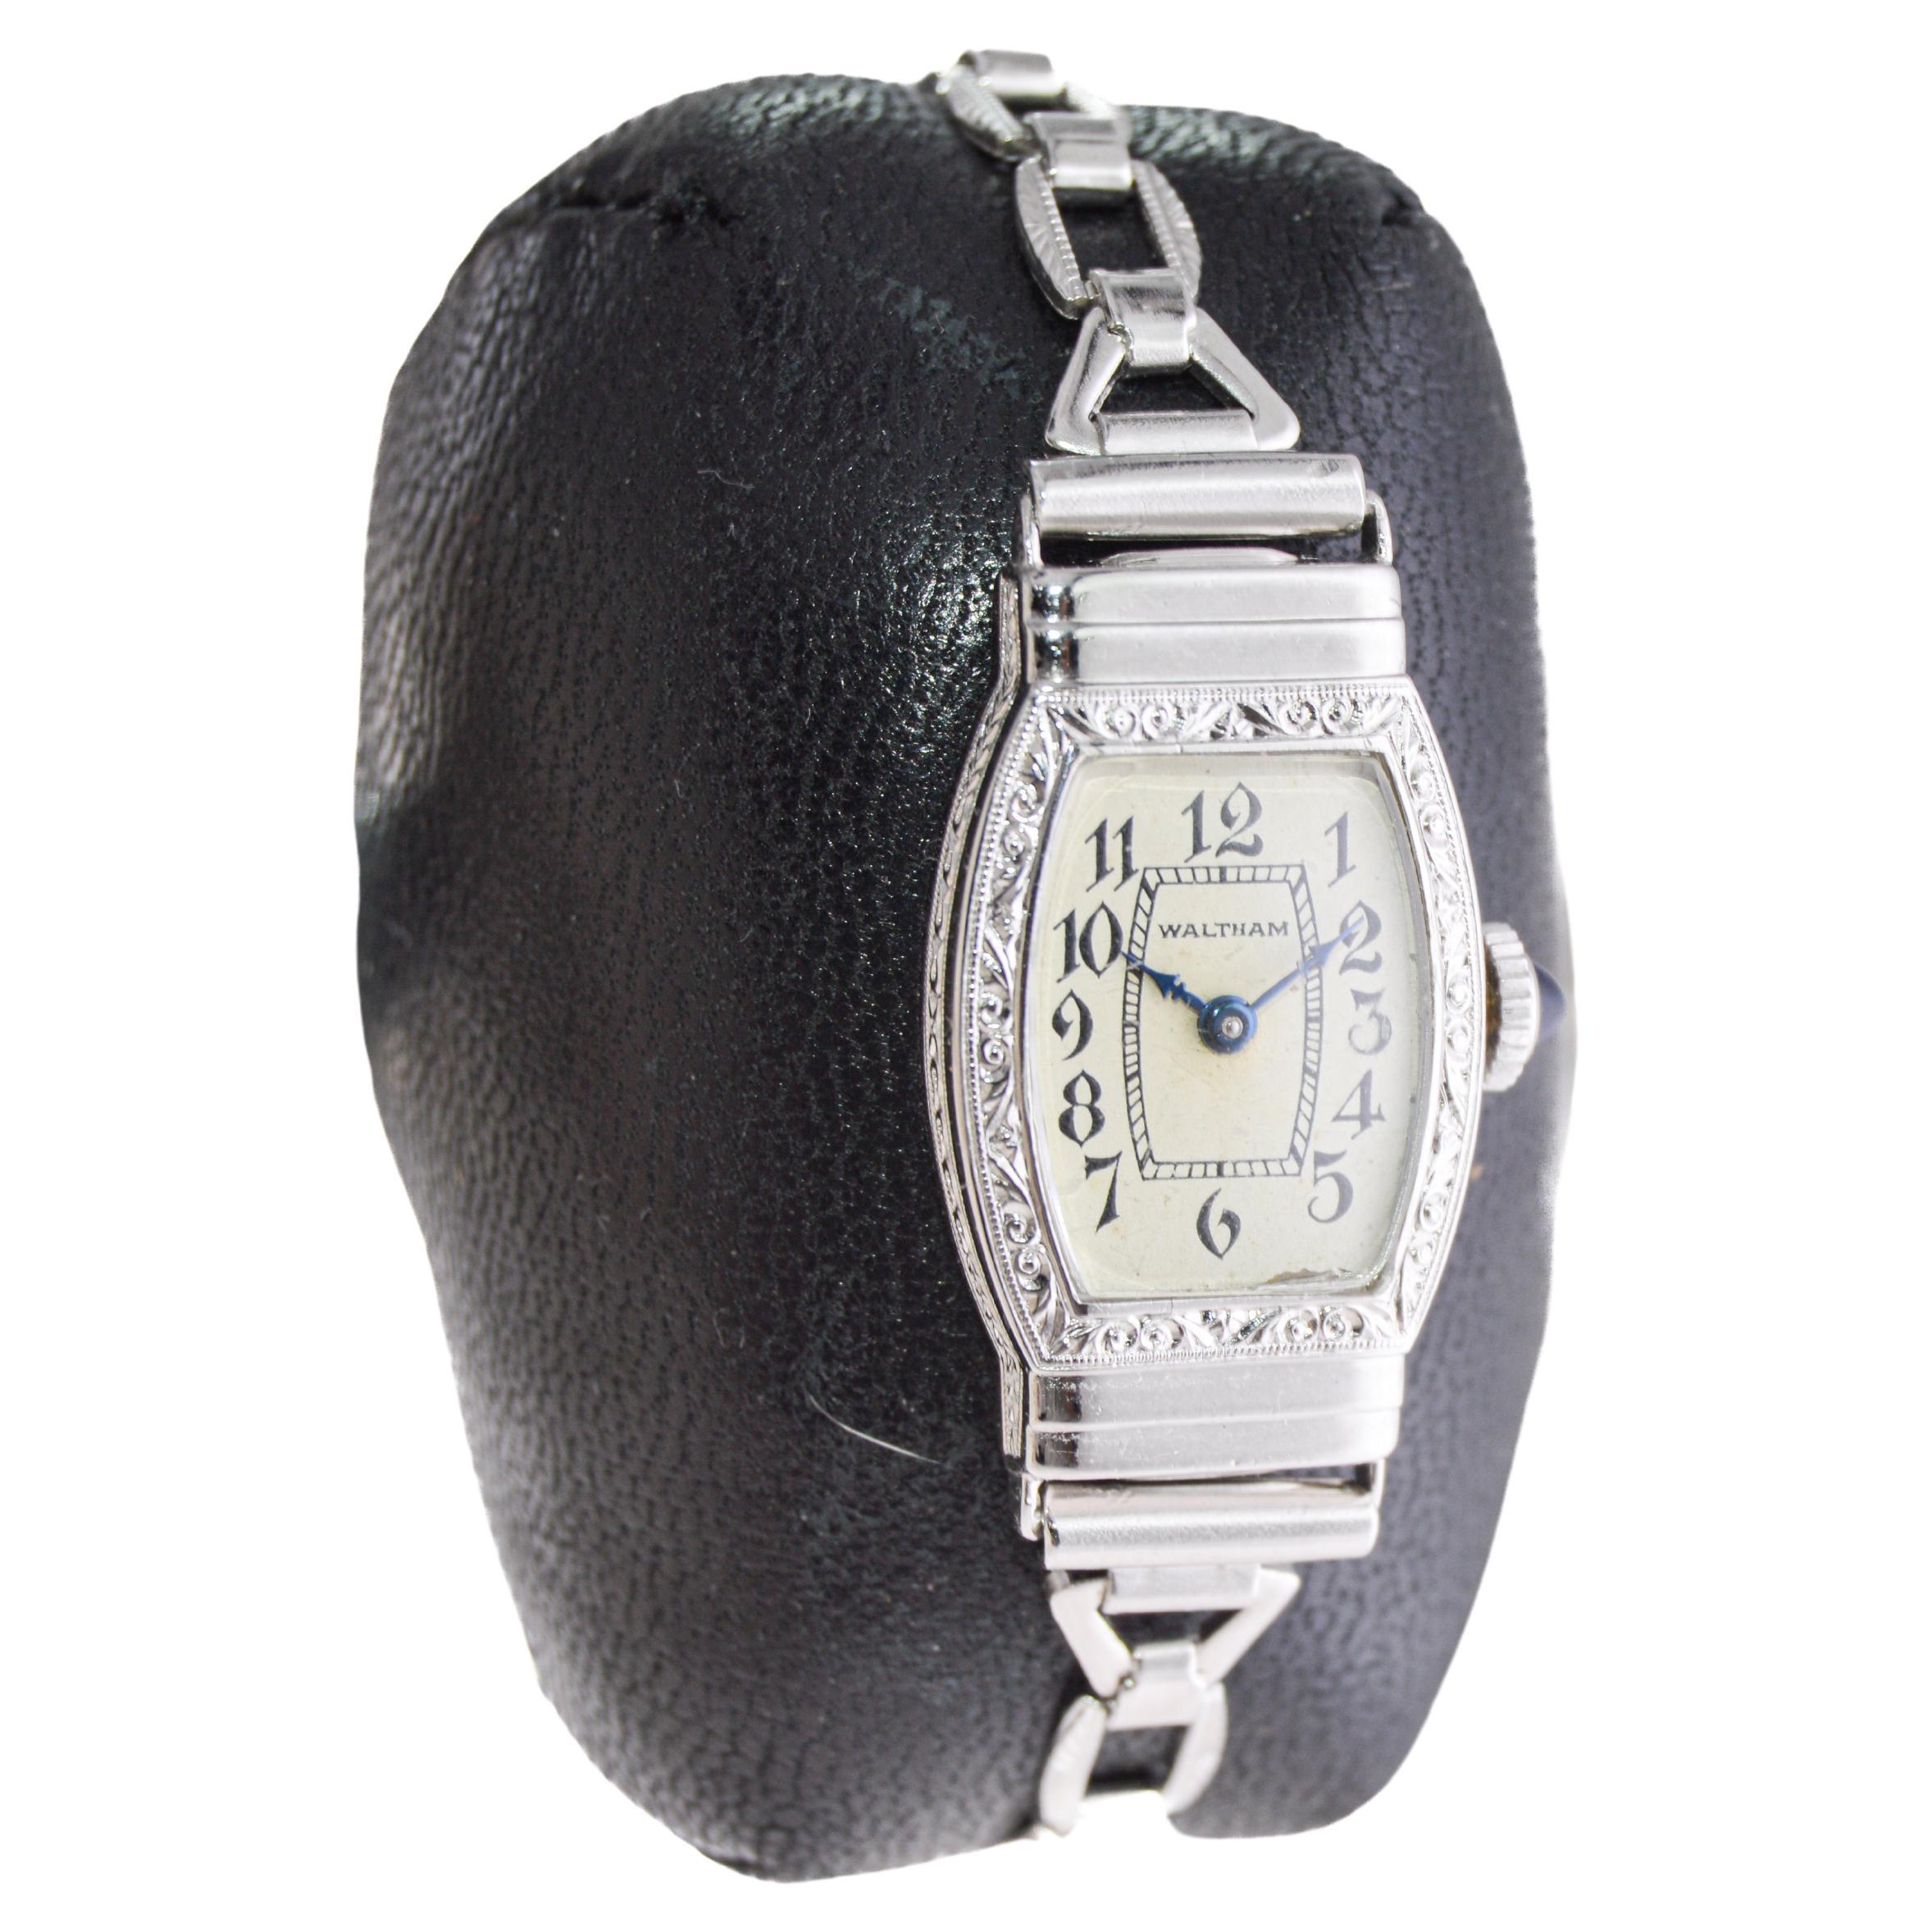 FABRIK / HAUS: Waltham Watch Company
STIL / REFERENZ: Art Deco / Original-Armband
METALL / MATERIAL: Weißgold-gefüllt
CIRCA / JAHR: 1932
ABMESSUNGEN / GRÖSSE: Länge 32mm X Breite 16mm
UHRWERK / KALIBER: Handaufzug / 15 Jewels  
ZIFFERBLATT / ZEIGER: